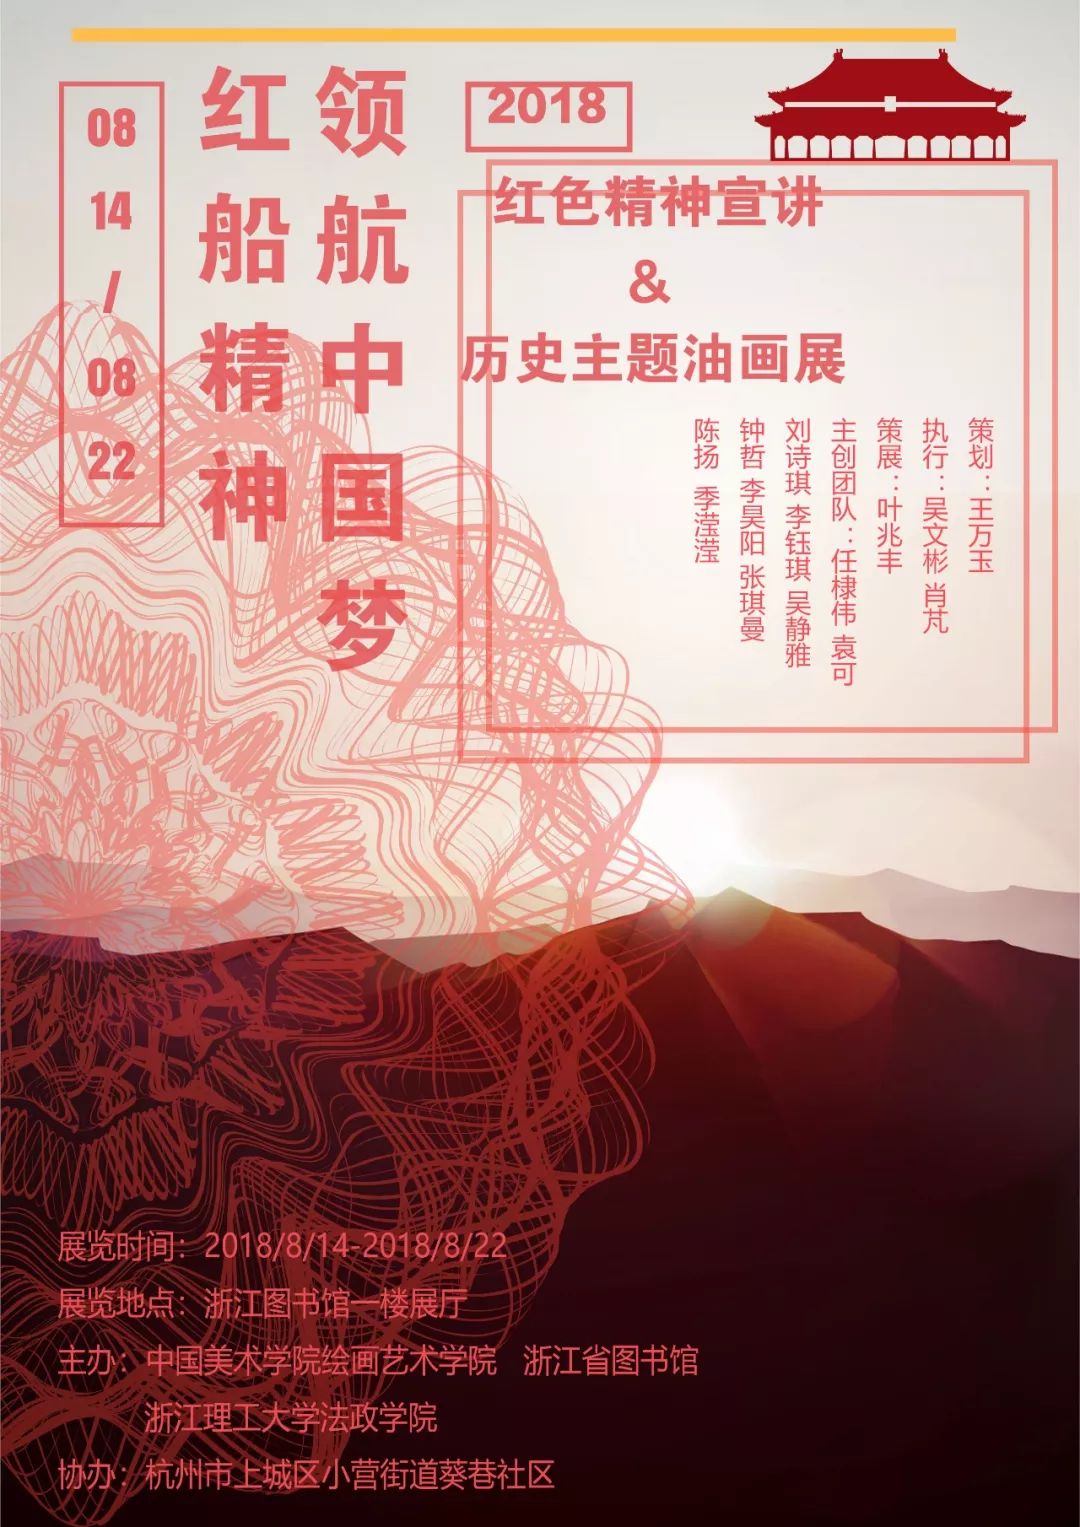 【预告】「红船精神领航中国梦」历史主题油画展览